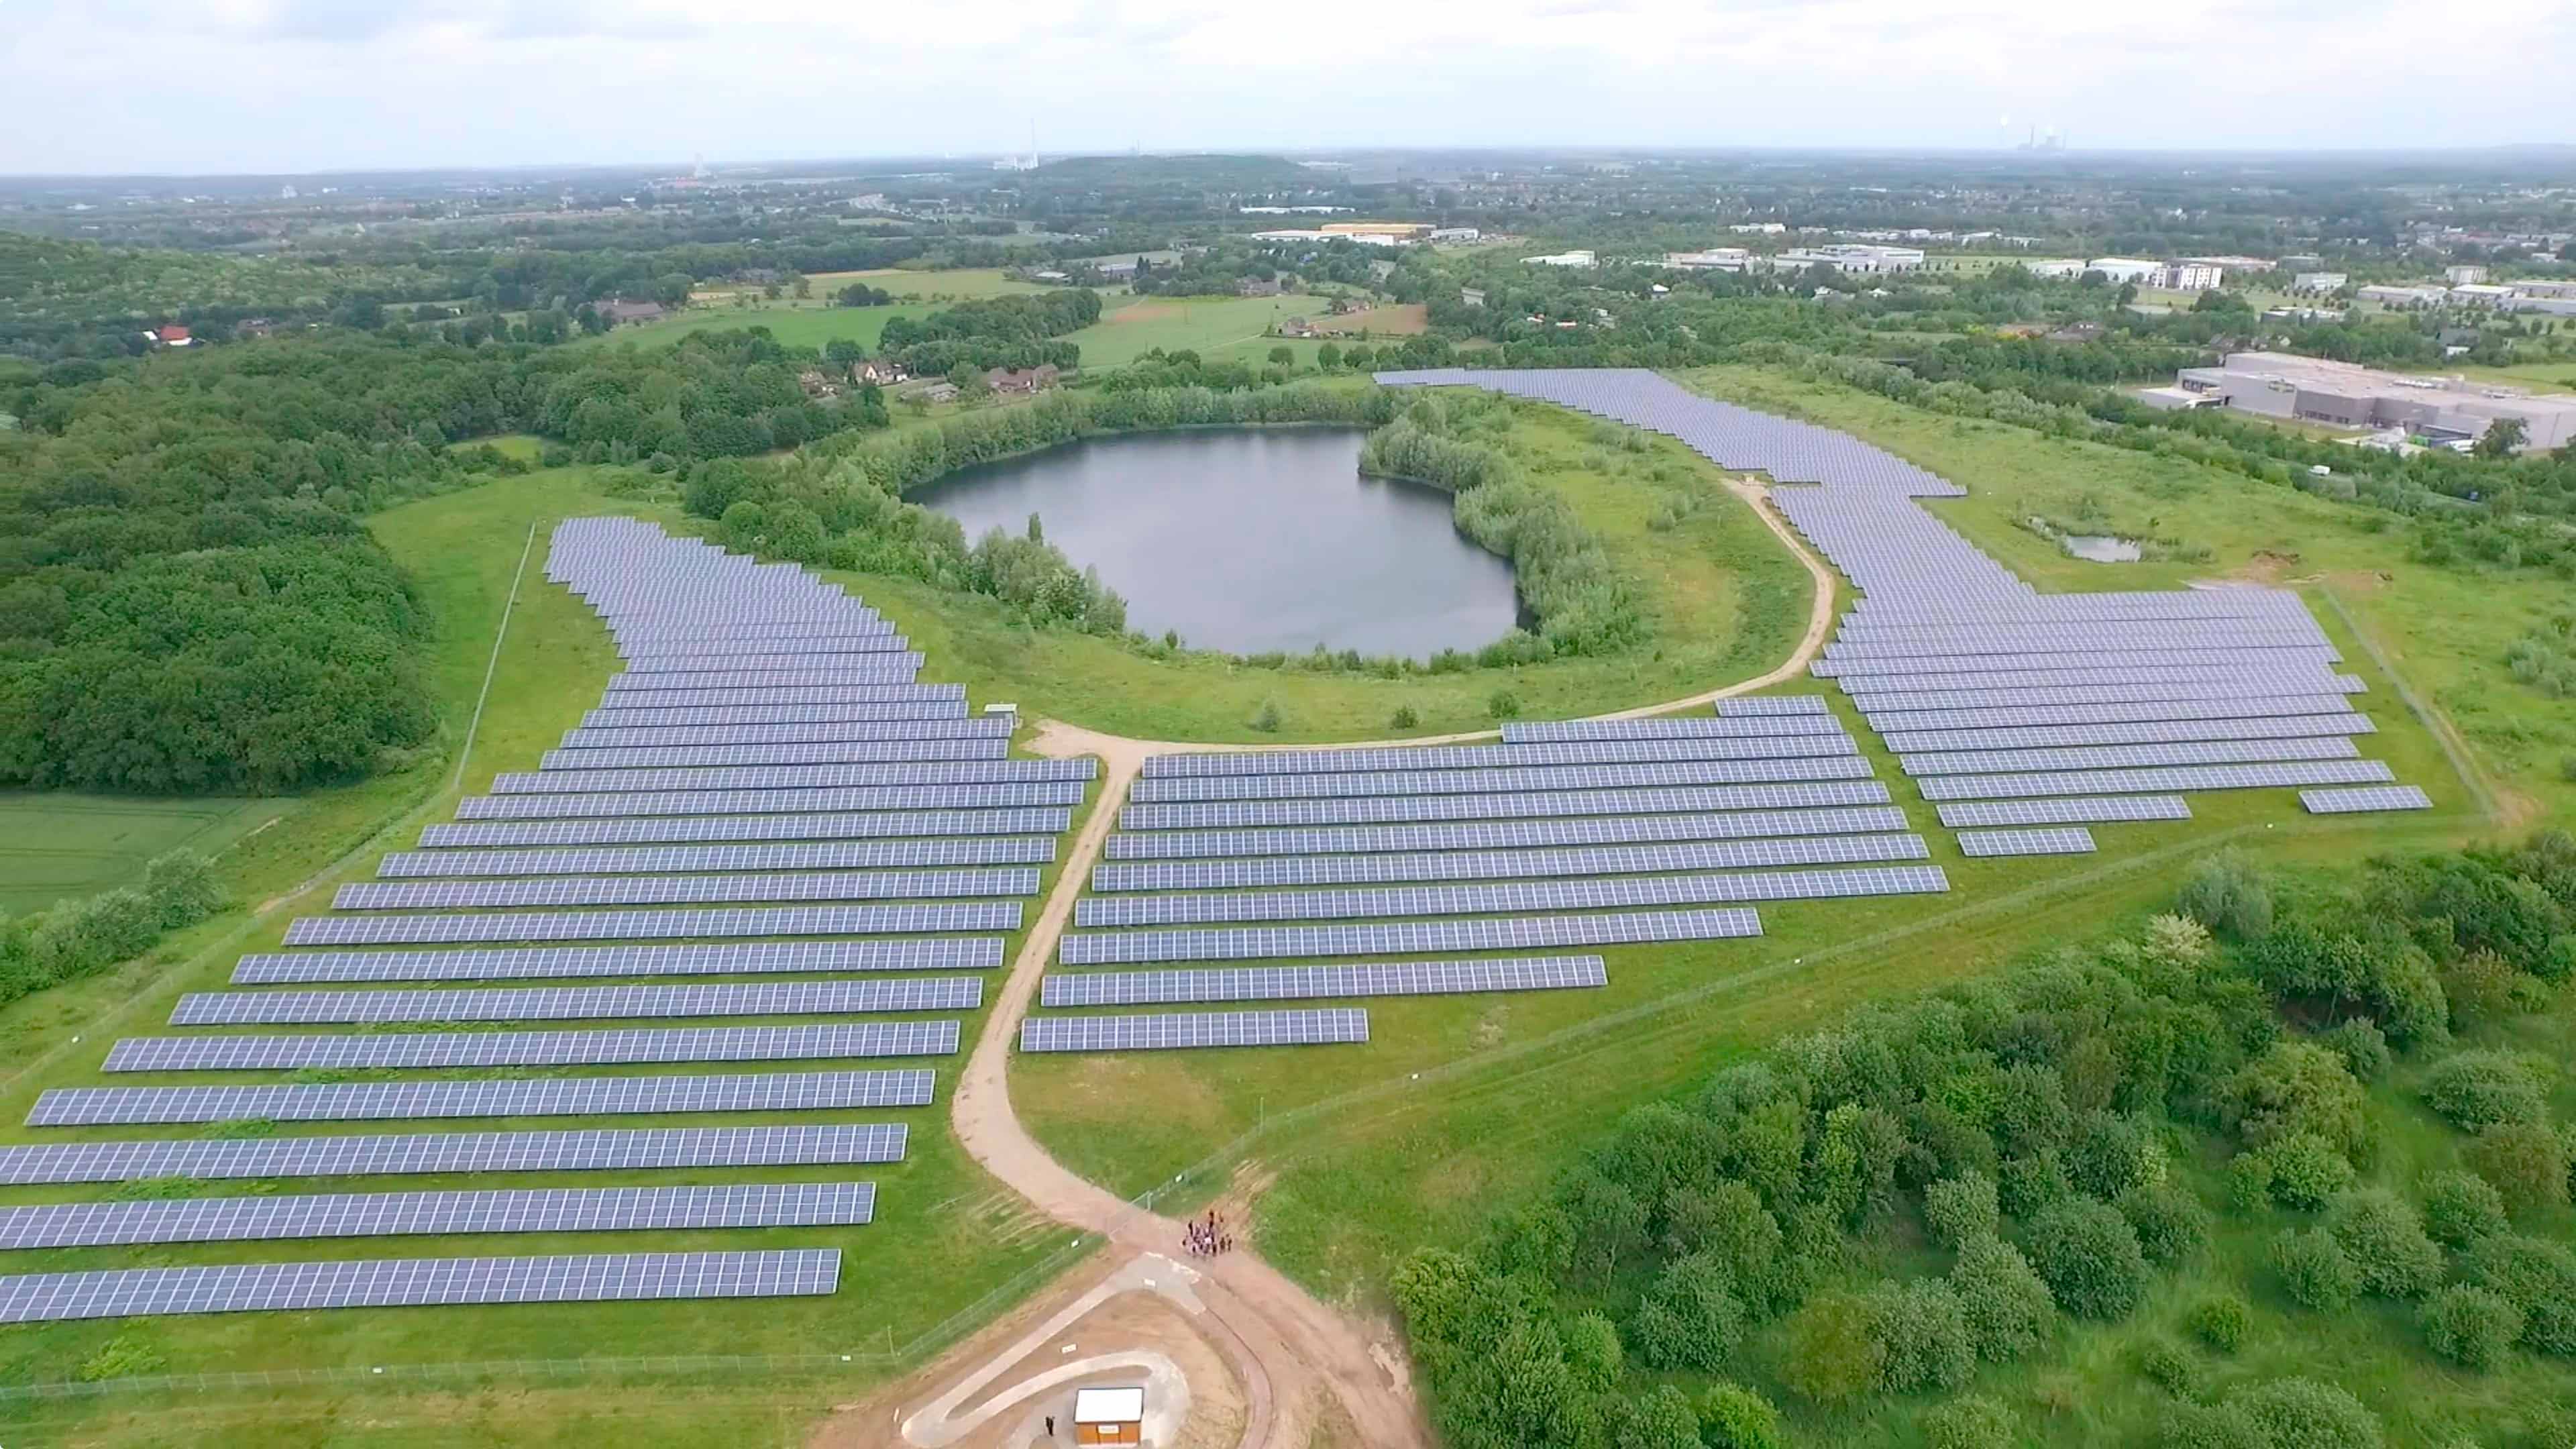 Luftbild eines Solarparkes im Grünen